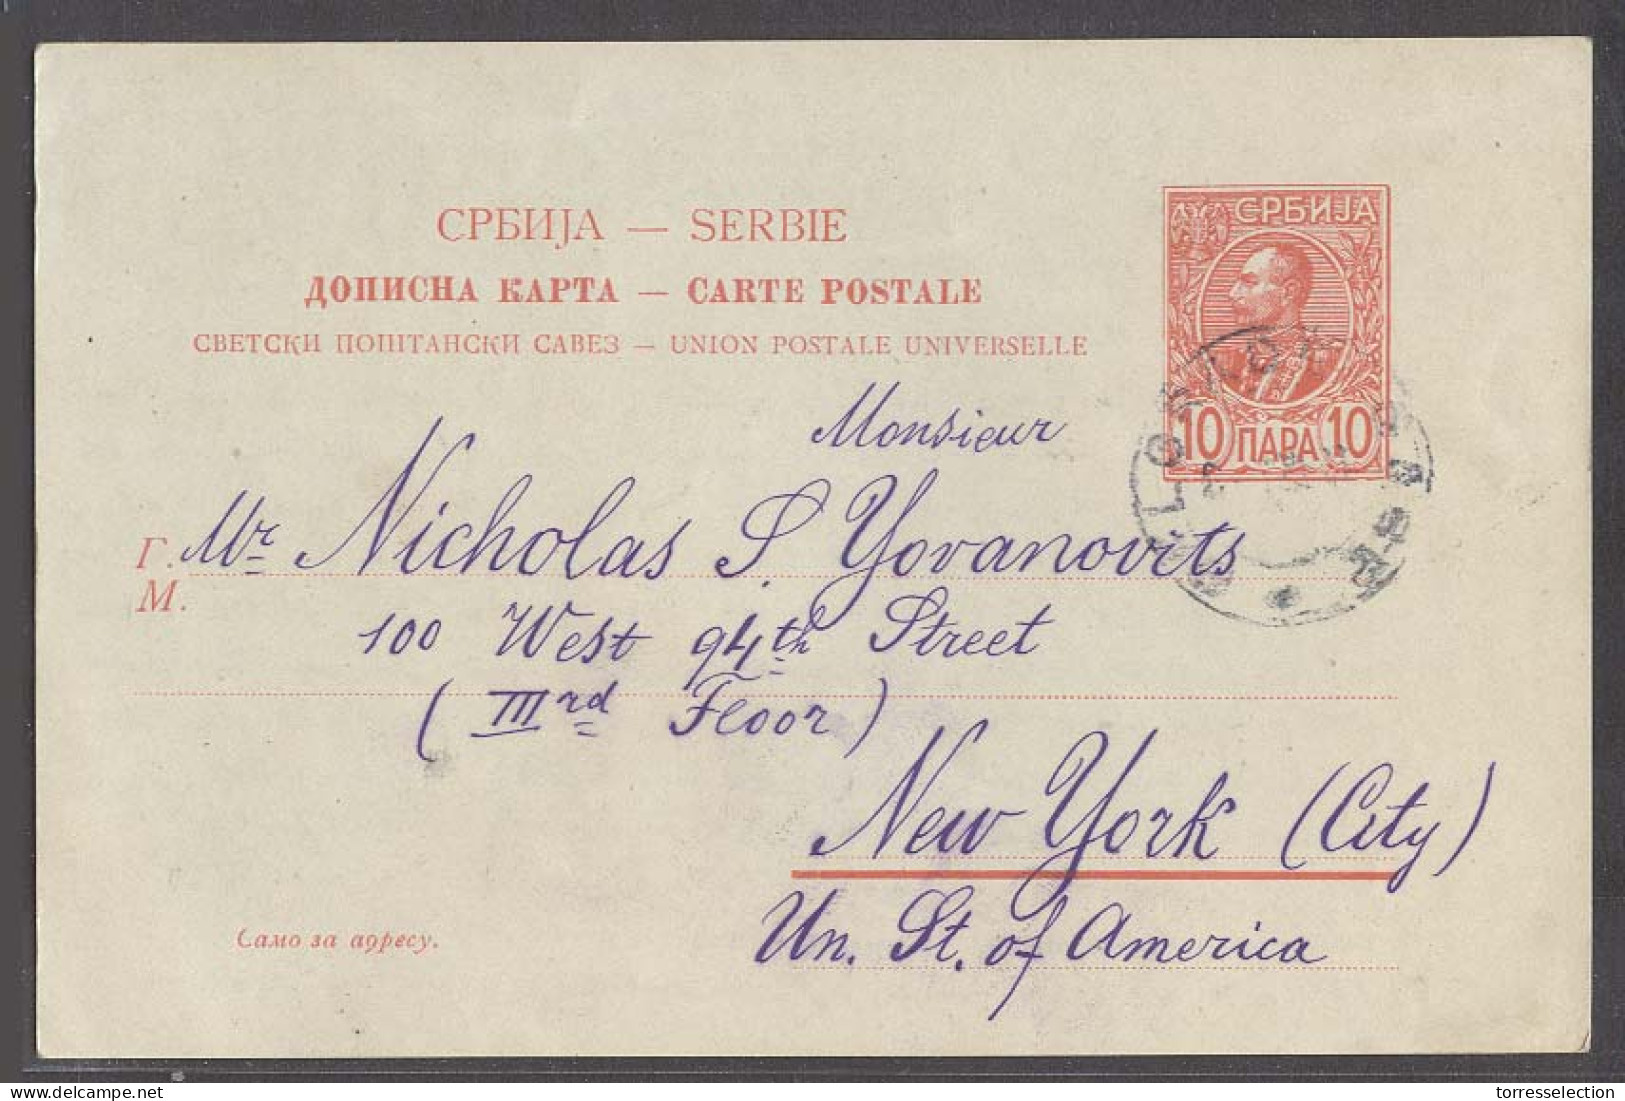 SERBIA. 1910. Belgrade - USA. 10p Red Stat Card. Fine Used. - Serbie